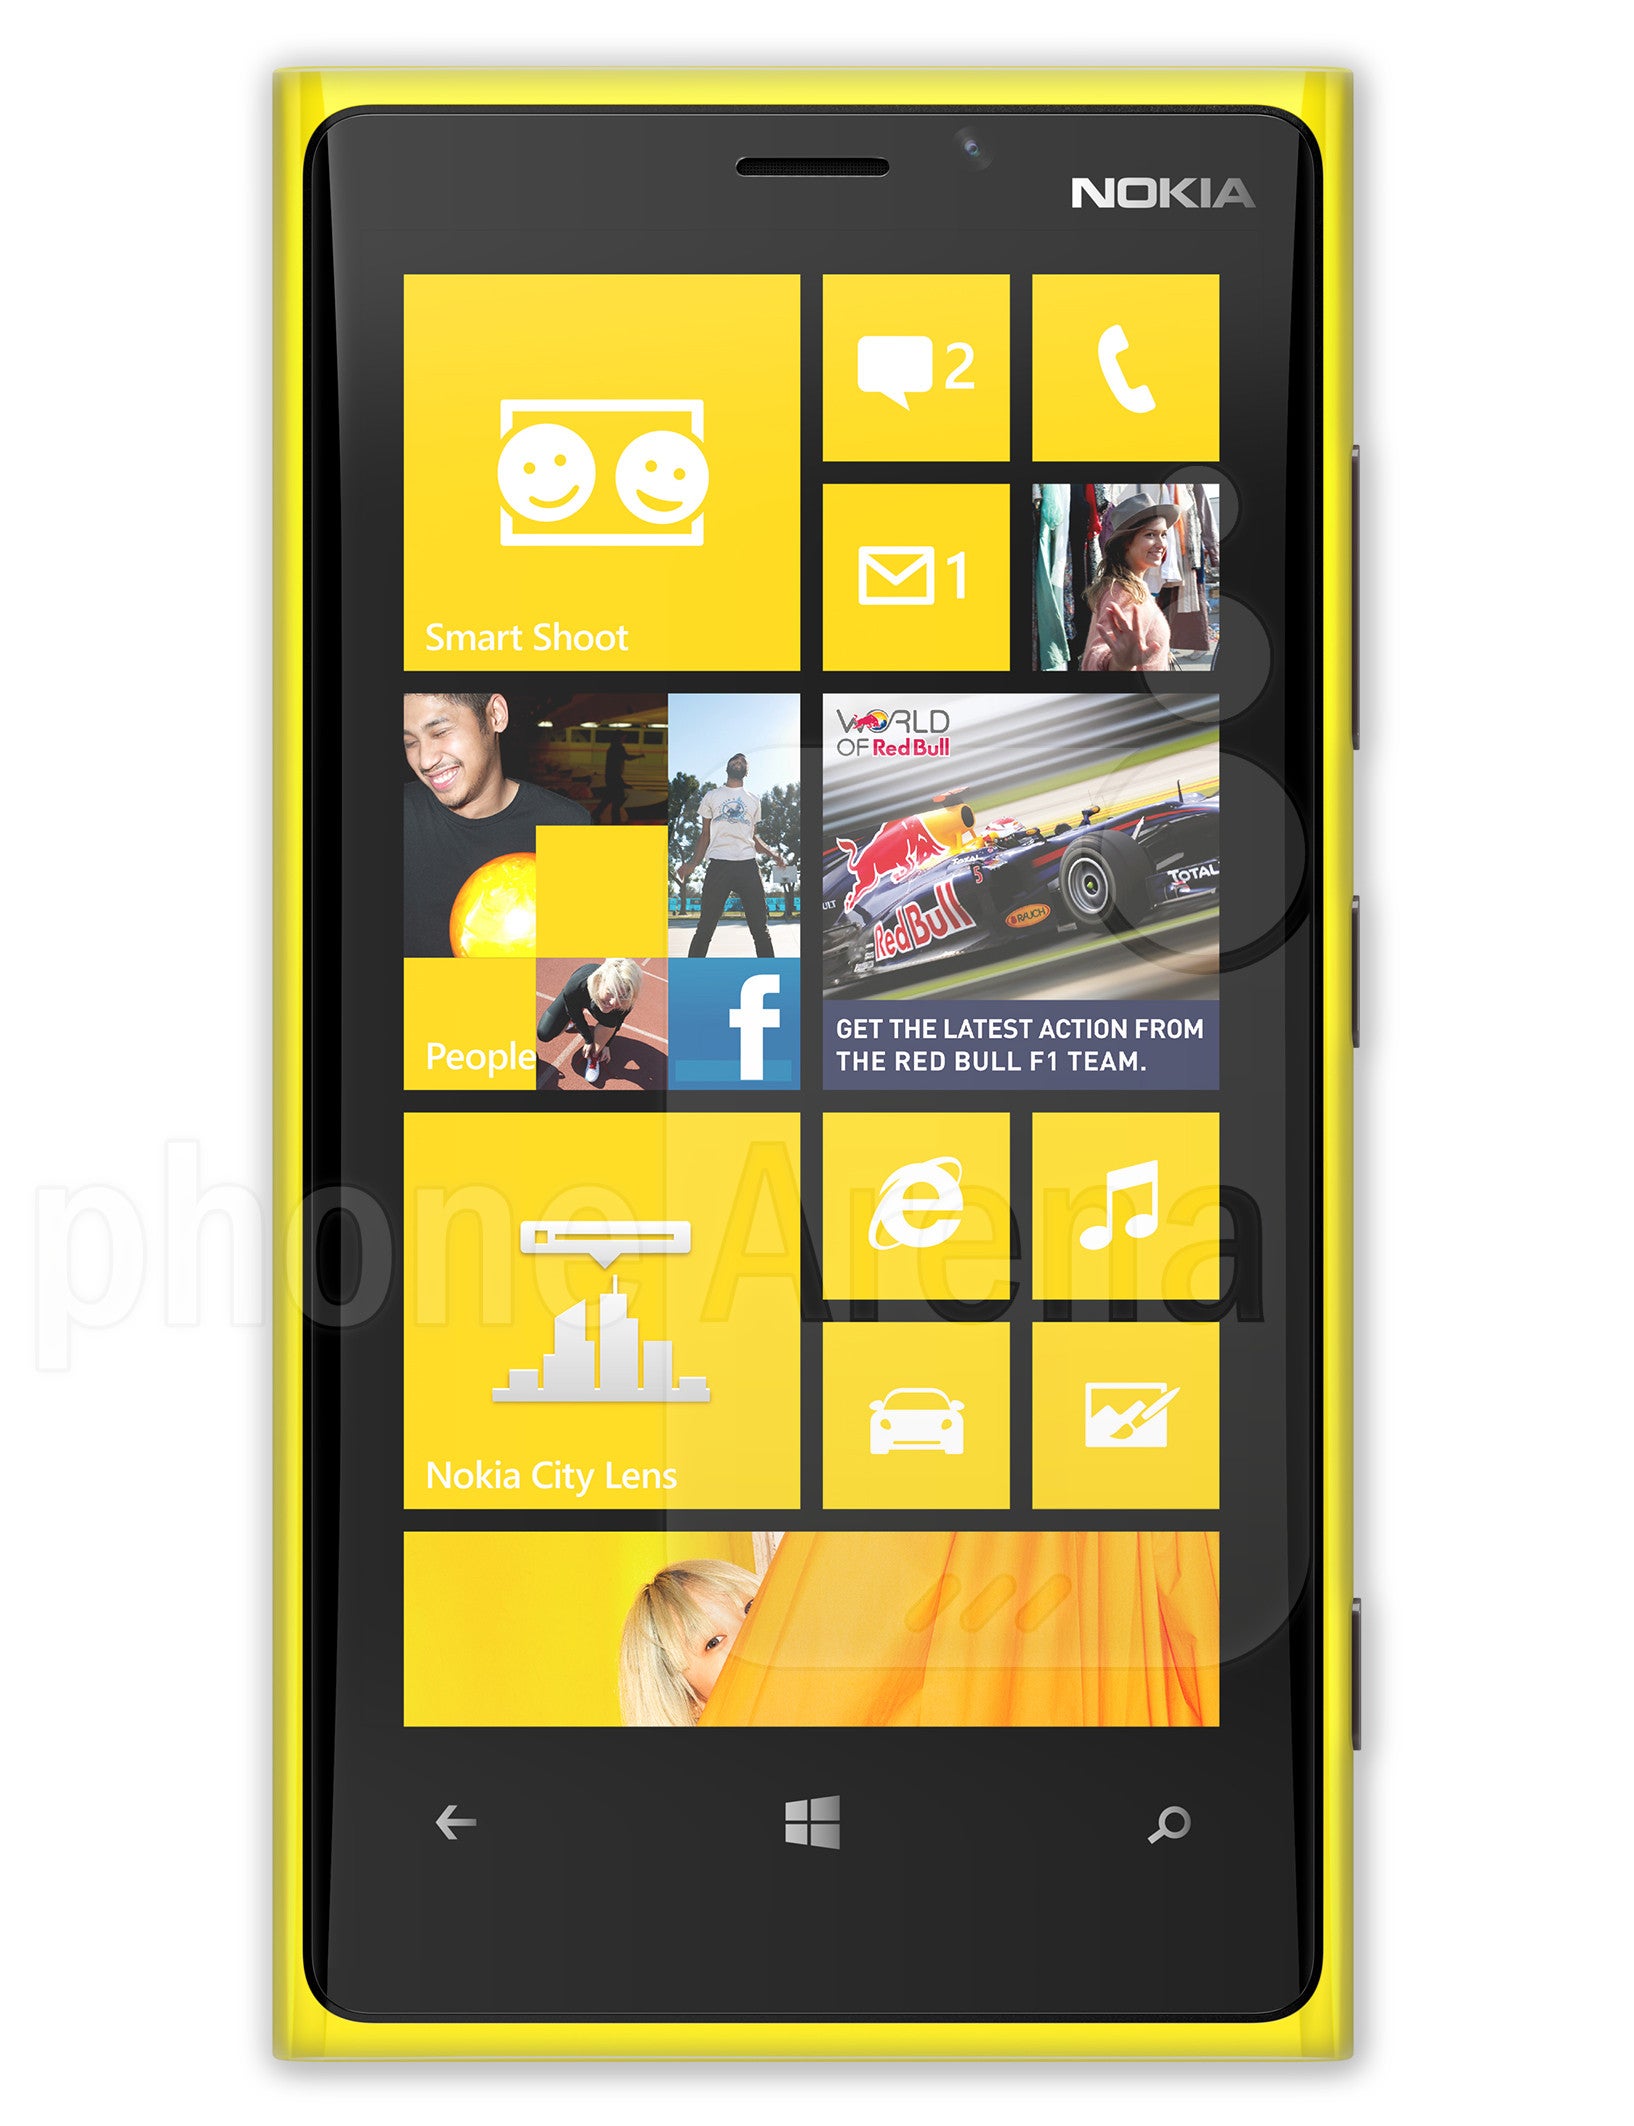 The Nokia Lumia 920 - Best Buy halts Nokia Lumia 920 pre-orders